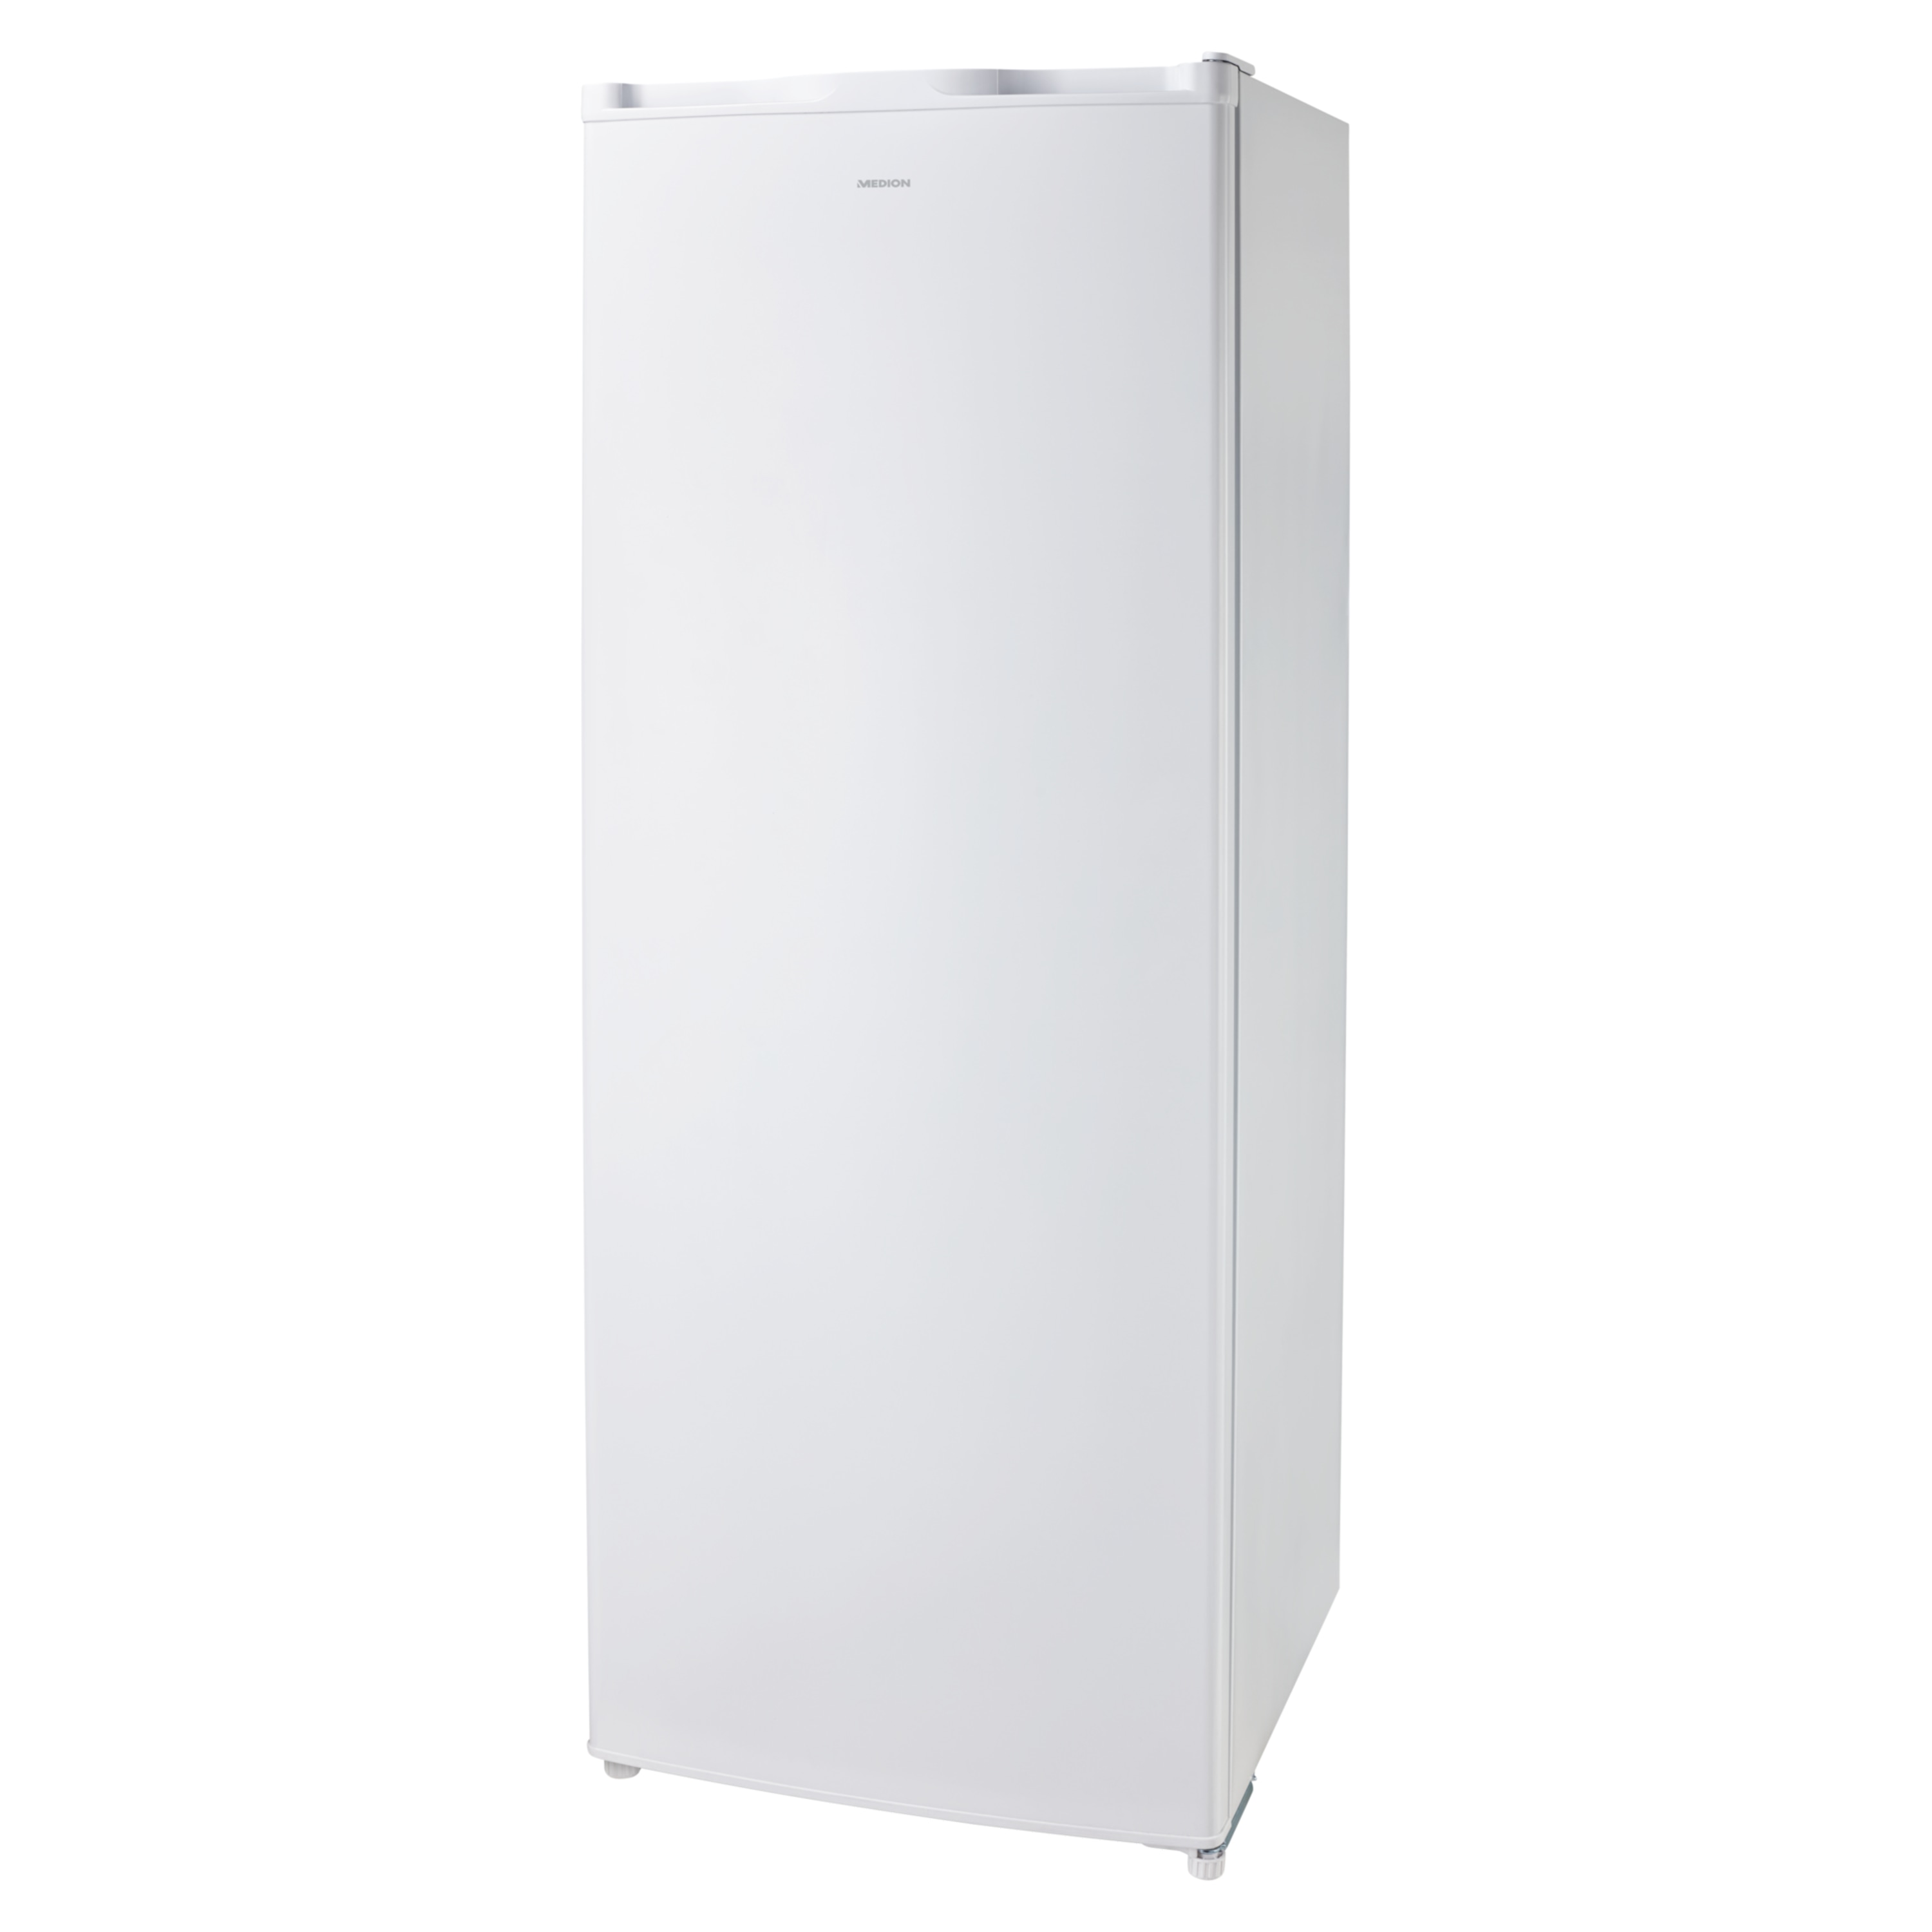 MEDION® Vollraum-Kühlschrank MD 37240, 242 Liter Gesamt-Nutzinhalt, wechselbarer Türanschlag,  höhenverstellbare Füße,  manuelle Temperaturkontrolle